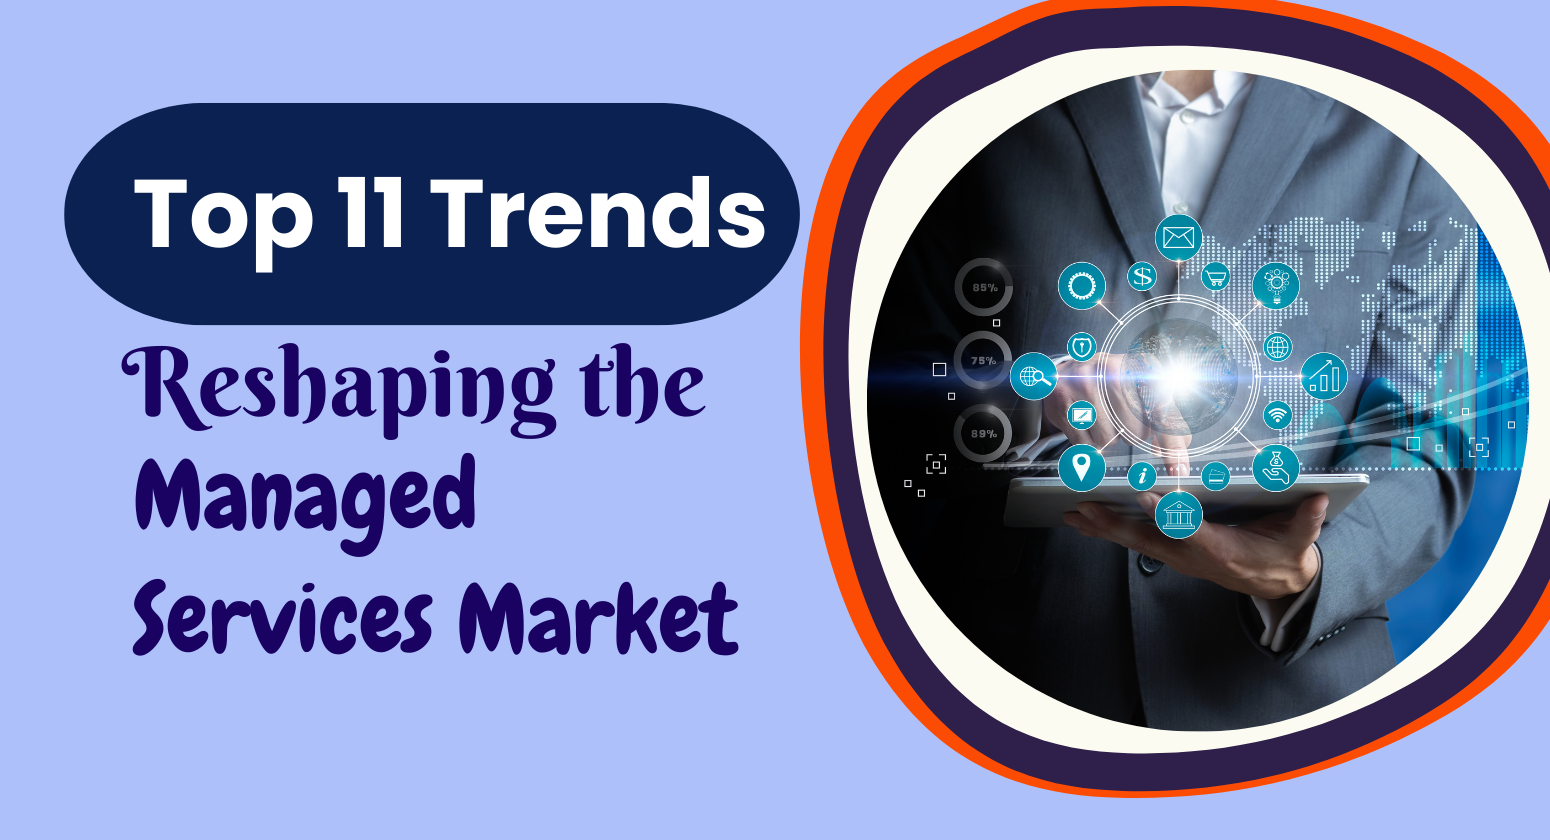 Las 11 principales tendencias que están remodelando el mercado de servicios gestionados